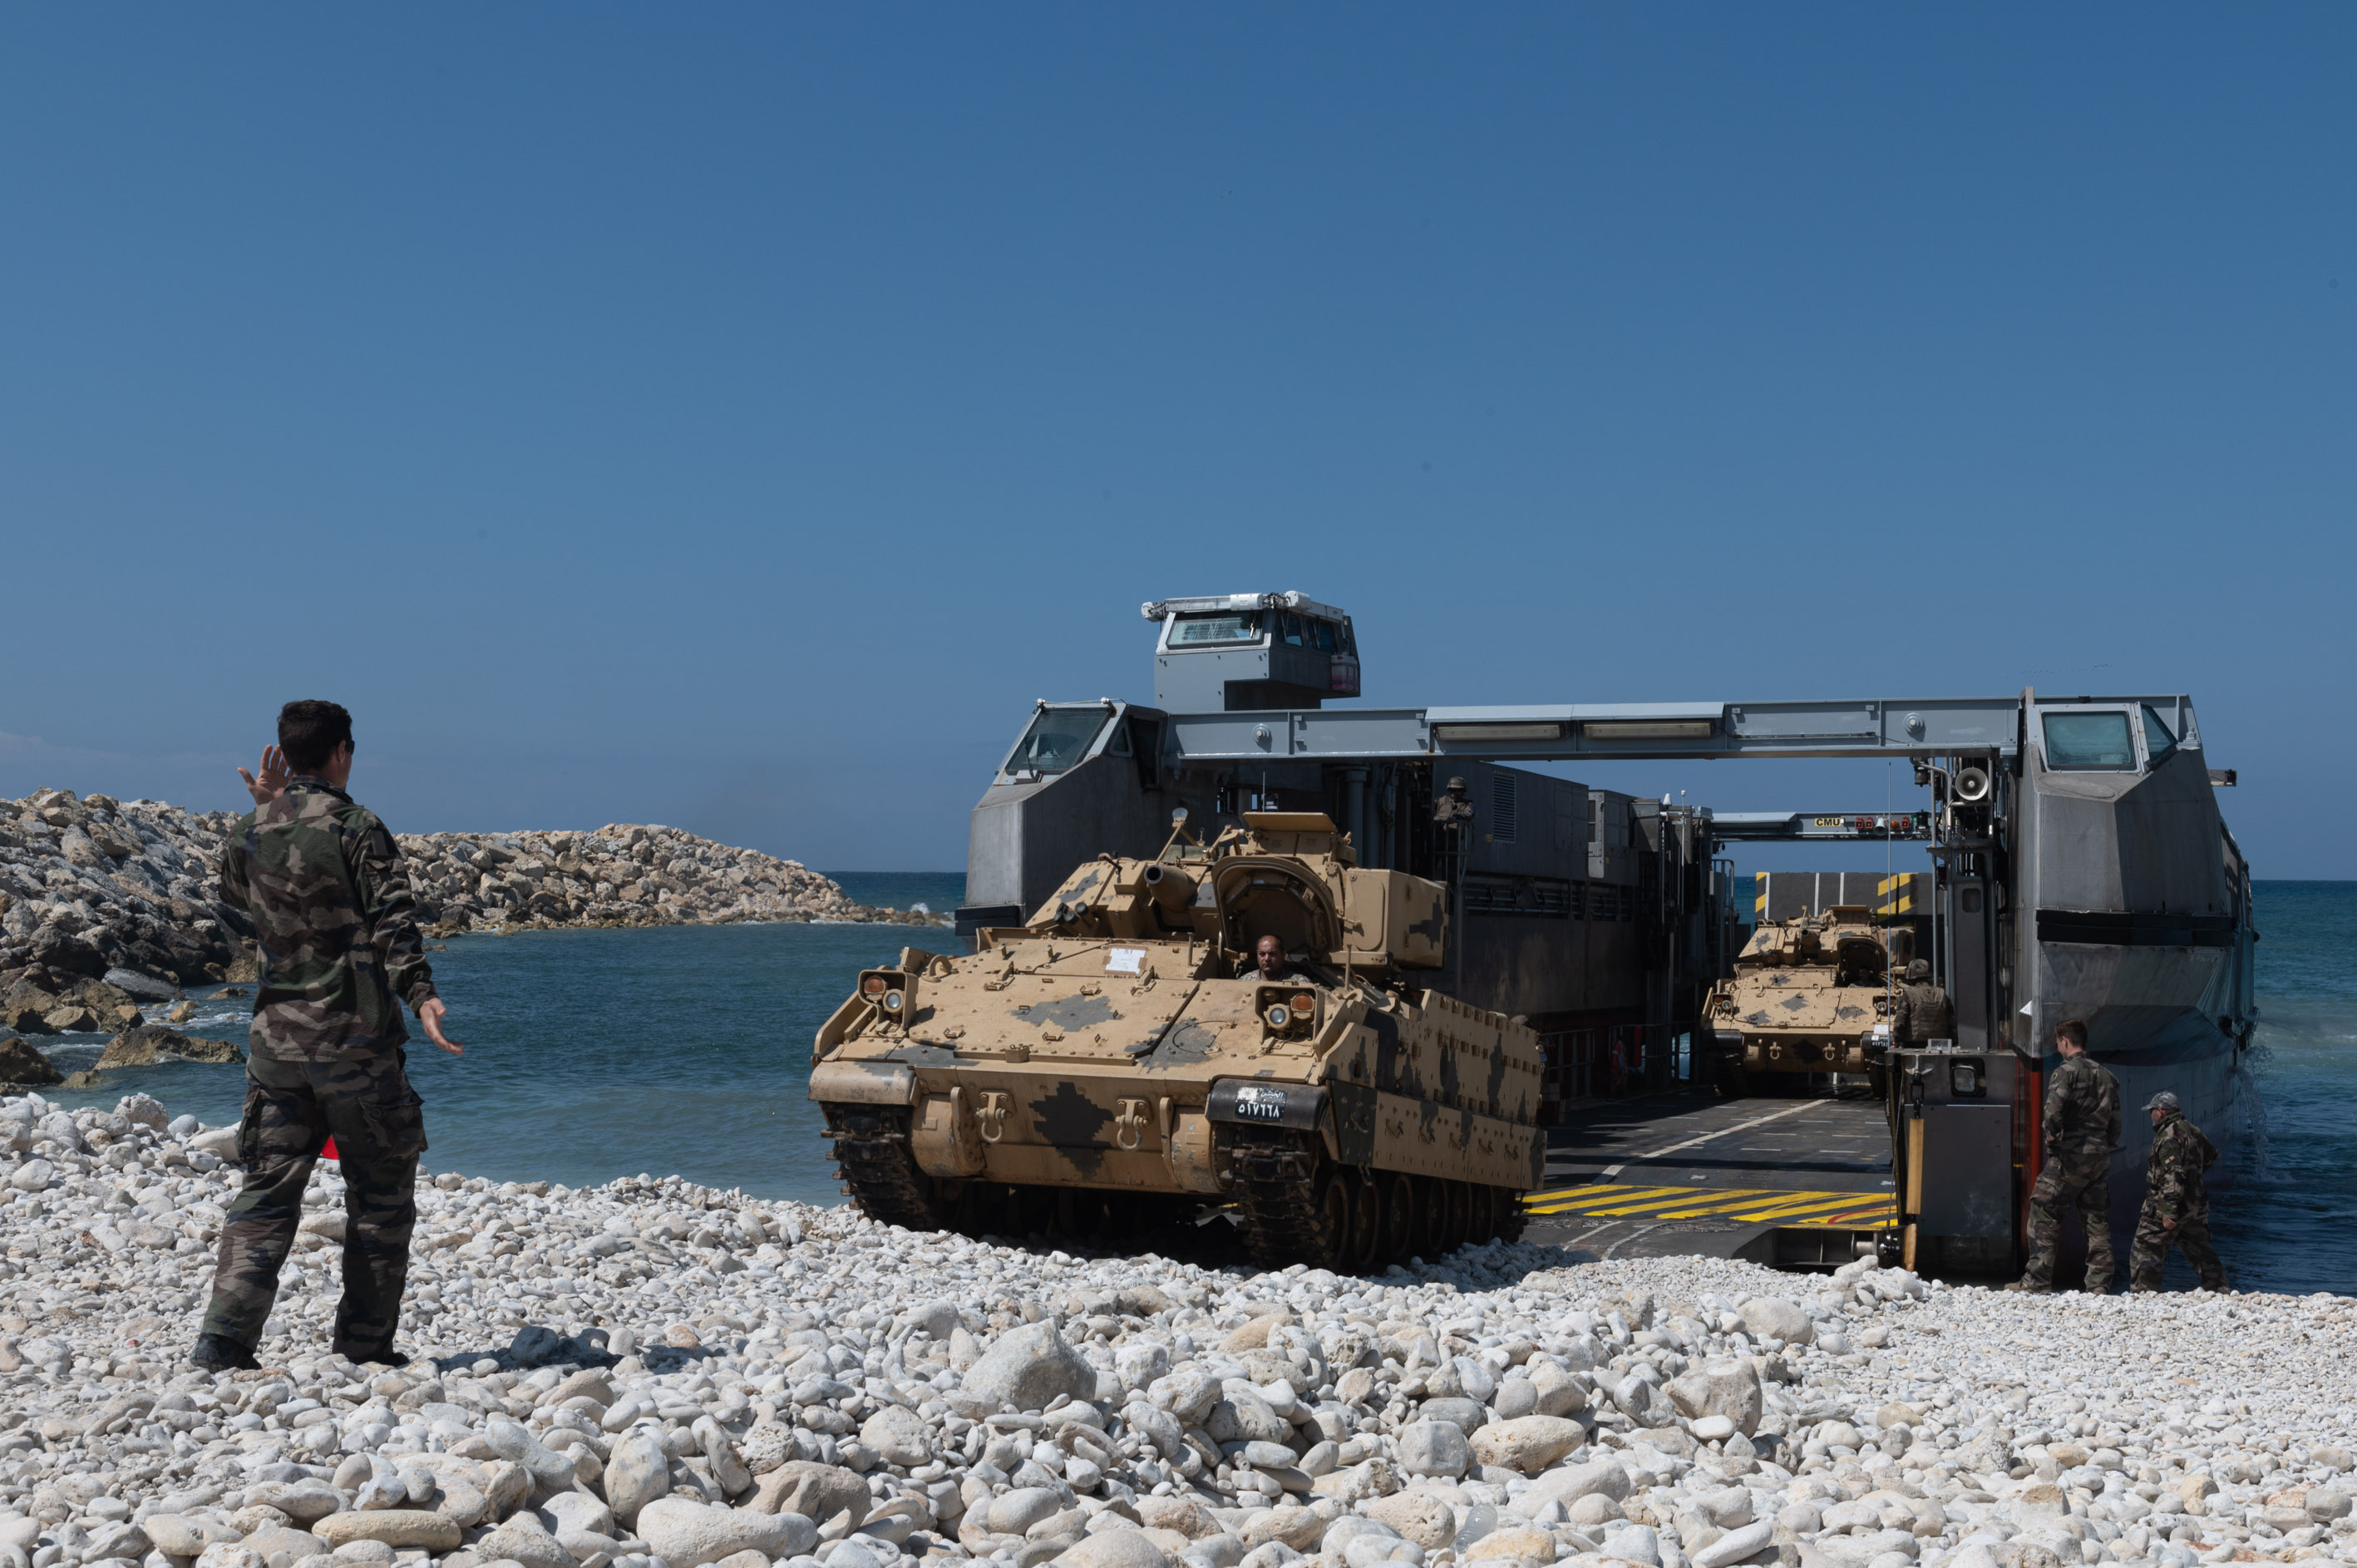  LIBAN – Les armées françaises aux côtés de leurs partenaires libanais pour l’activité de coopération CEDRE BLEU